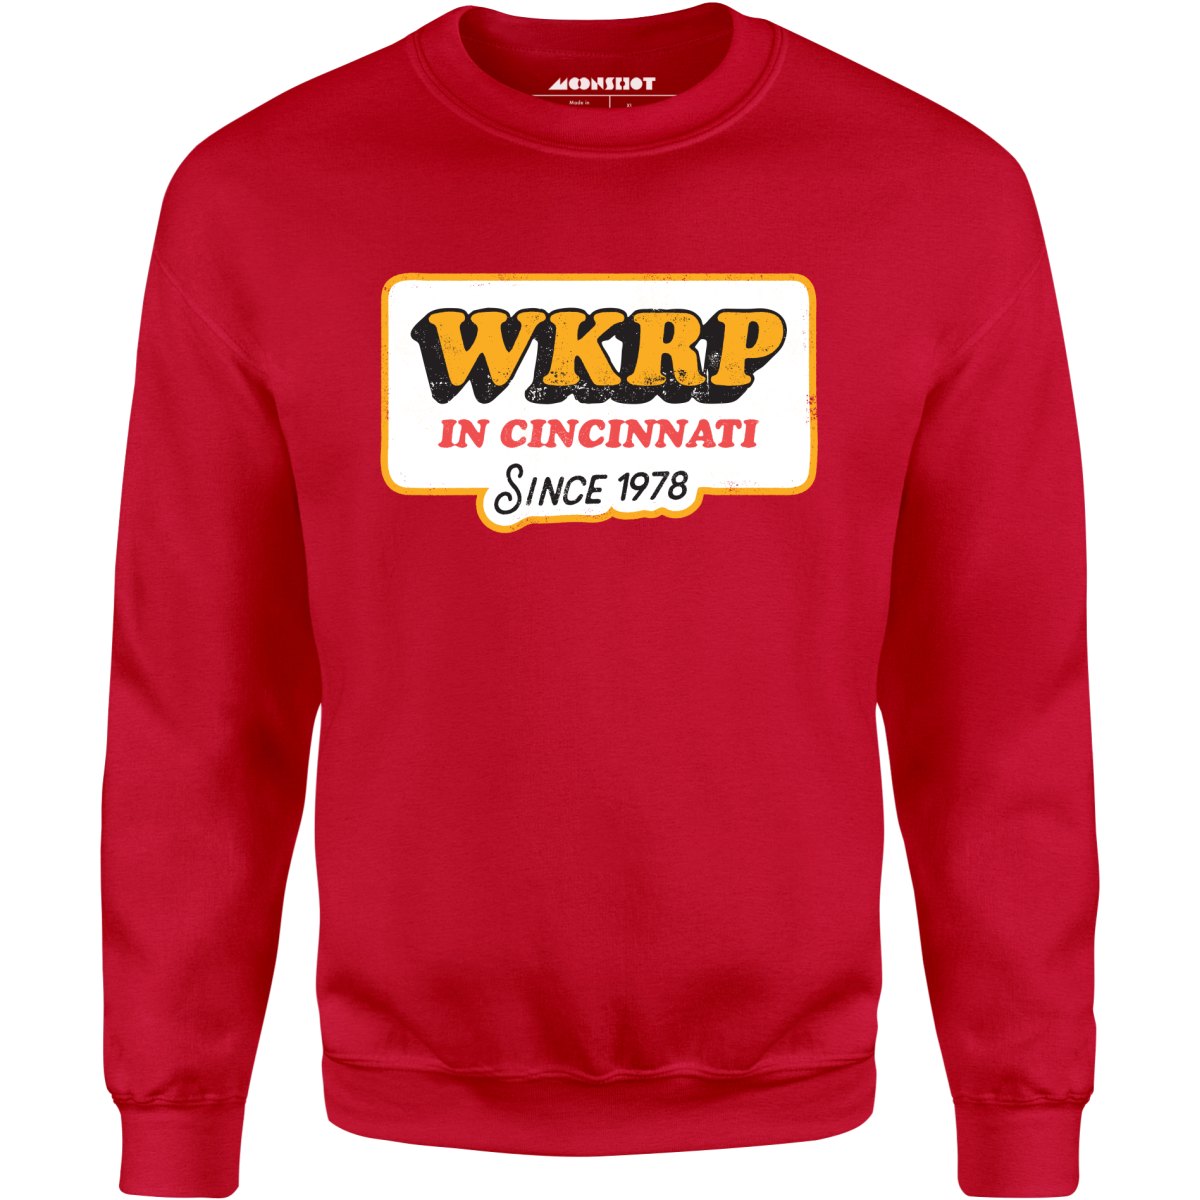 WKRP in Cincinnati - Unisex Sweatshirt